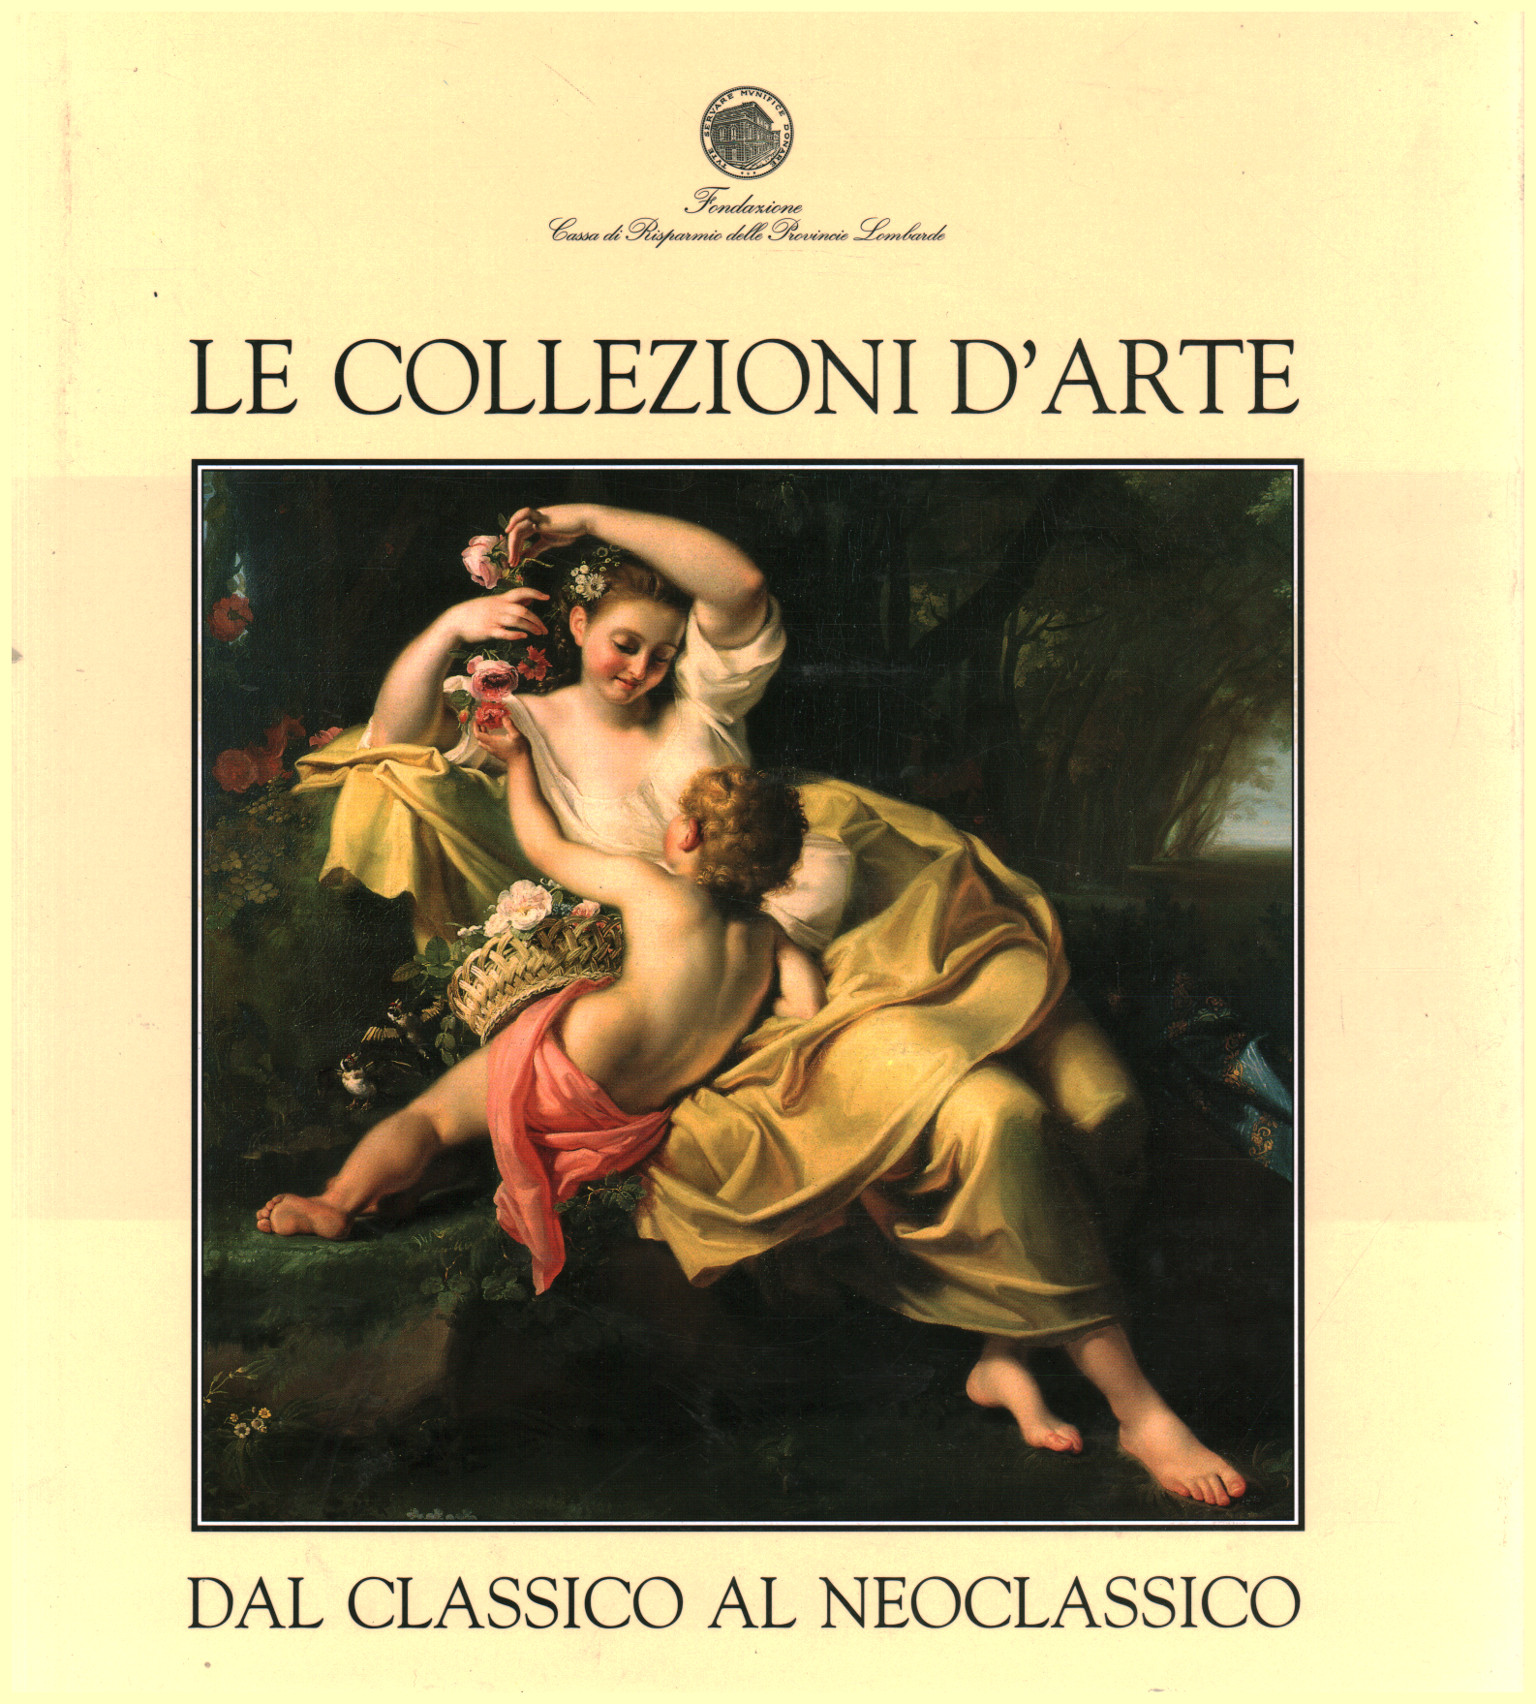 Les collections d'art du classique au néoclassique, Maria Luisa Gatti Perer